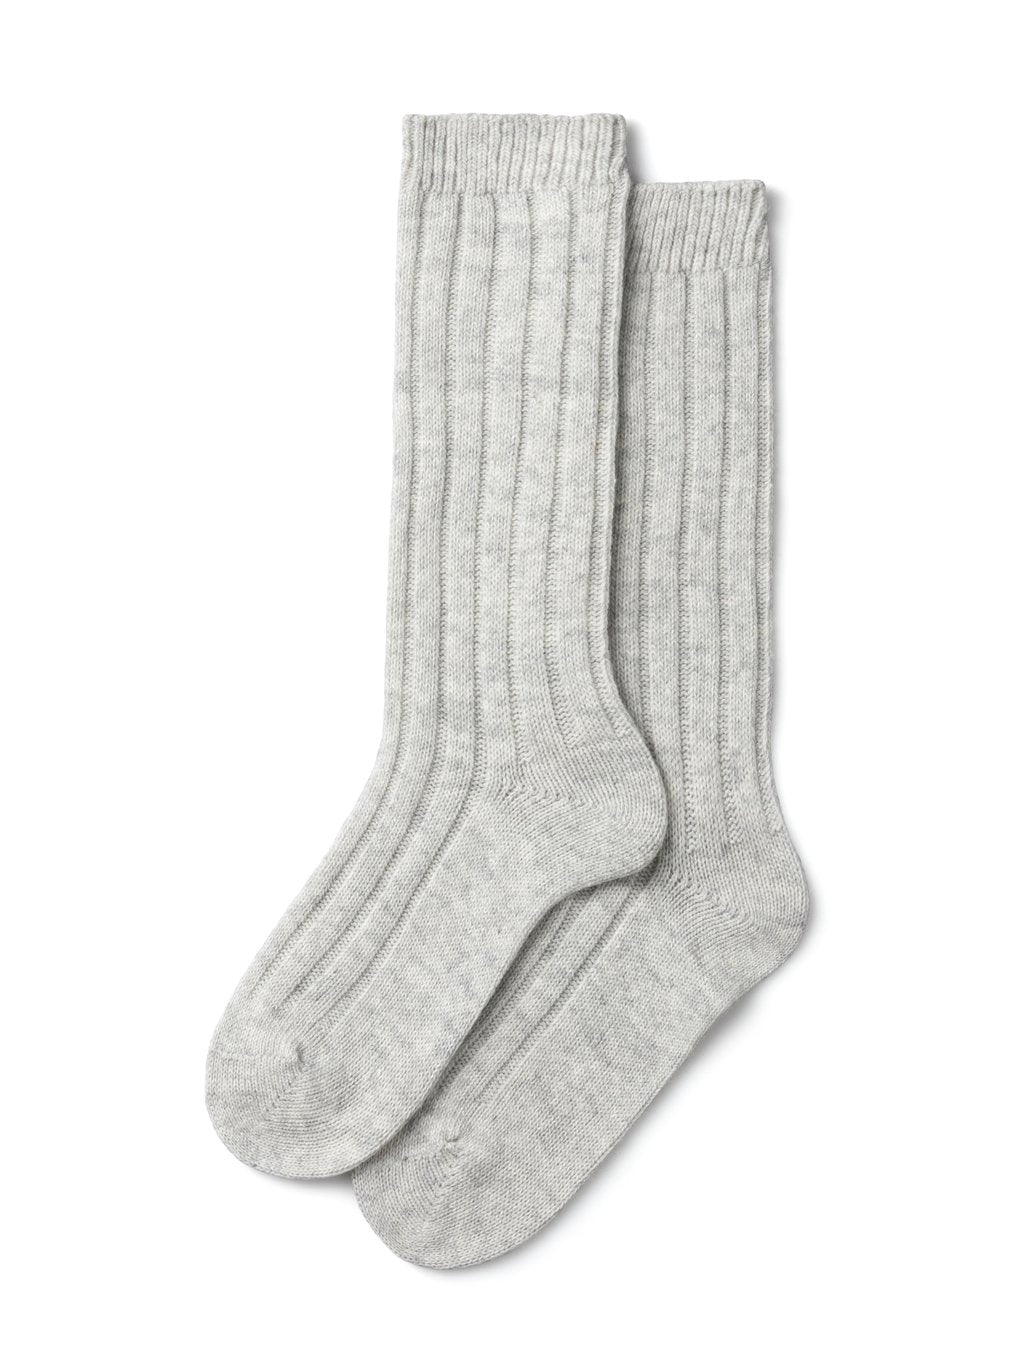 Cashmere Blend Light Grey Lounge Socks